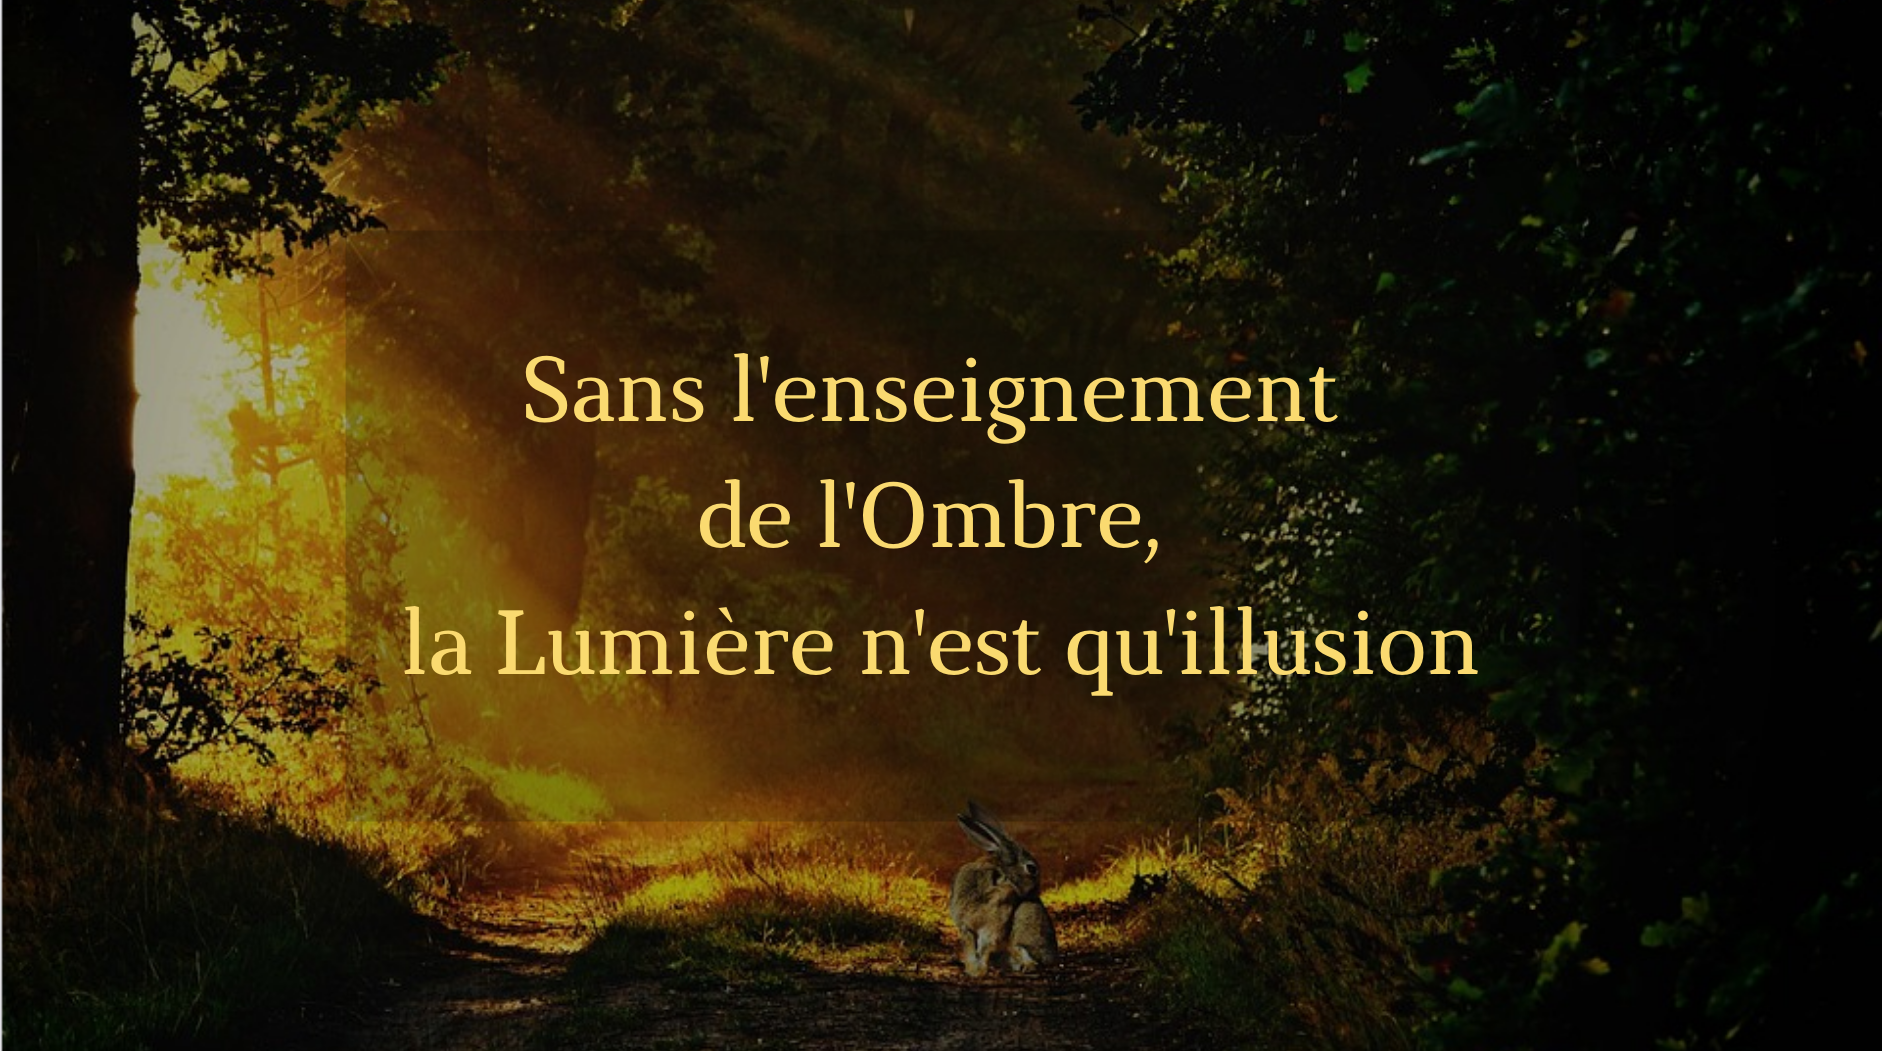 You are currently viewing Sans l’enseignement de l’Ombre, la Lumière n’est qu’illusion